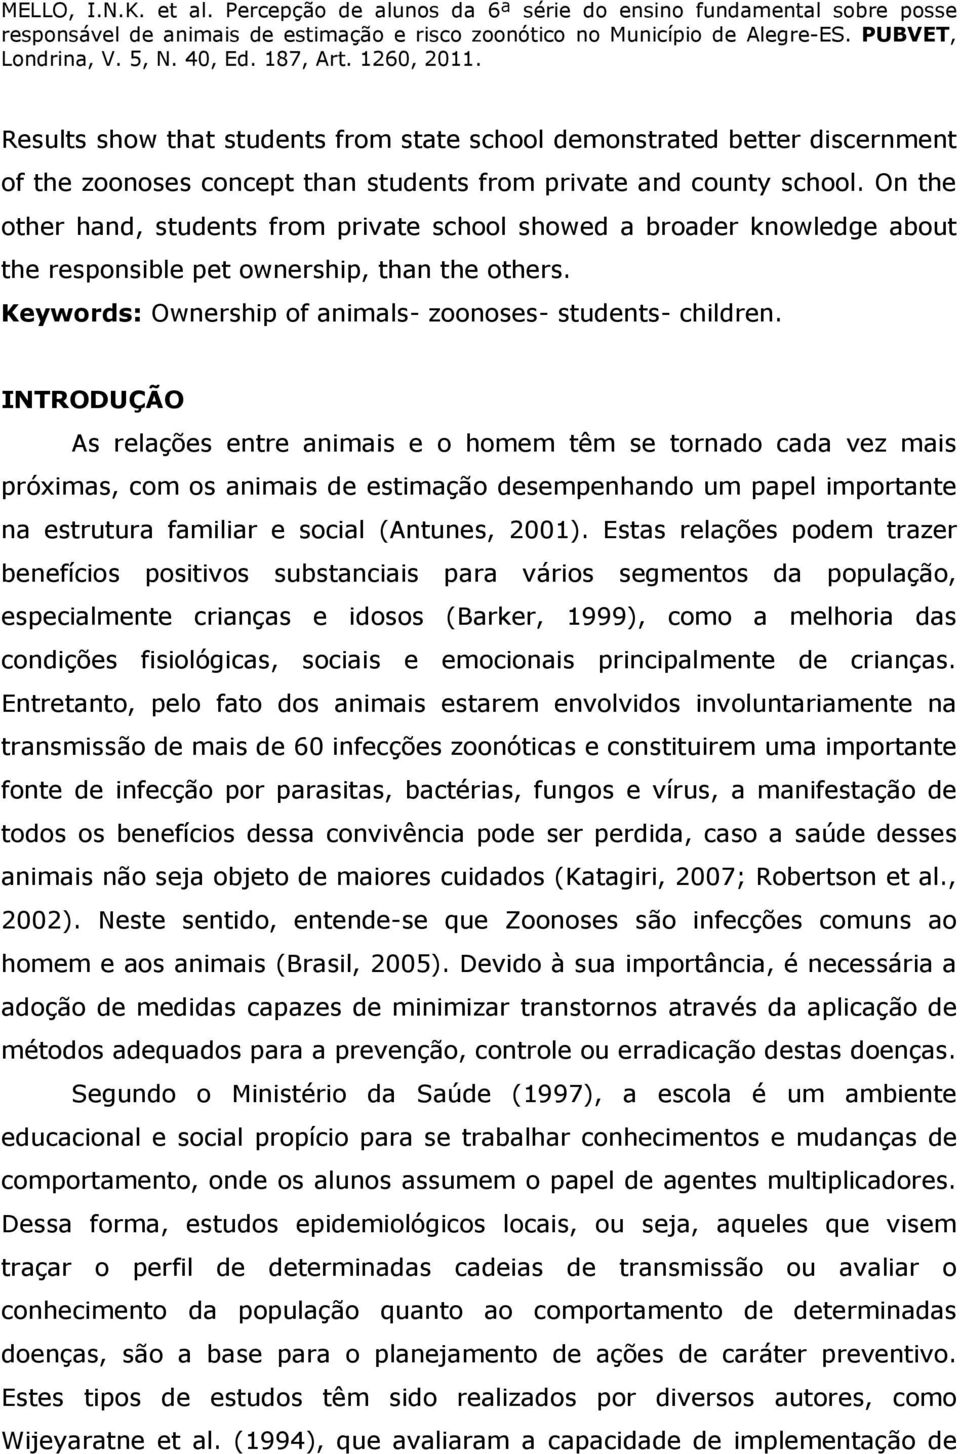 INTRODUÇÃO As relações entre animais e o homem têm se tornado cada vez mais próximas, com os animais de estimação desempenhando um papel importante na estrutura familiar e social (Antunes, 2001).